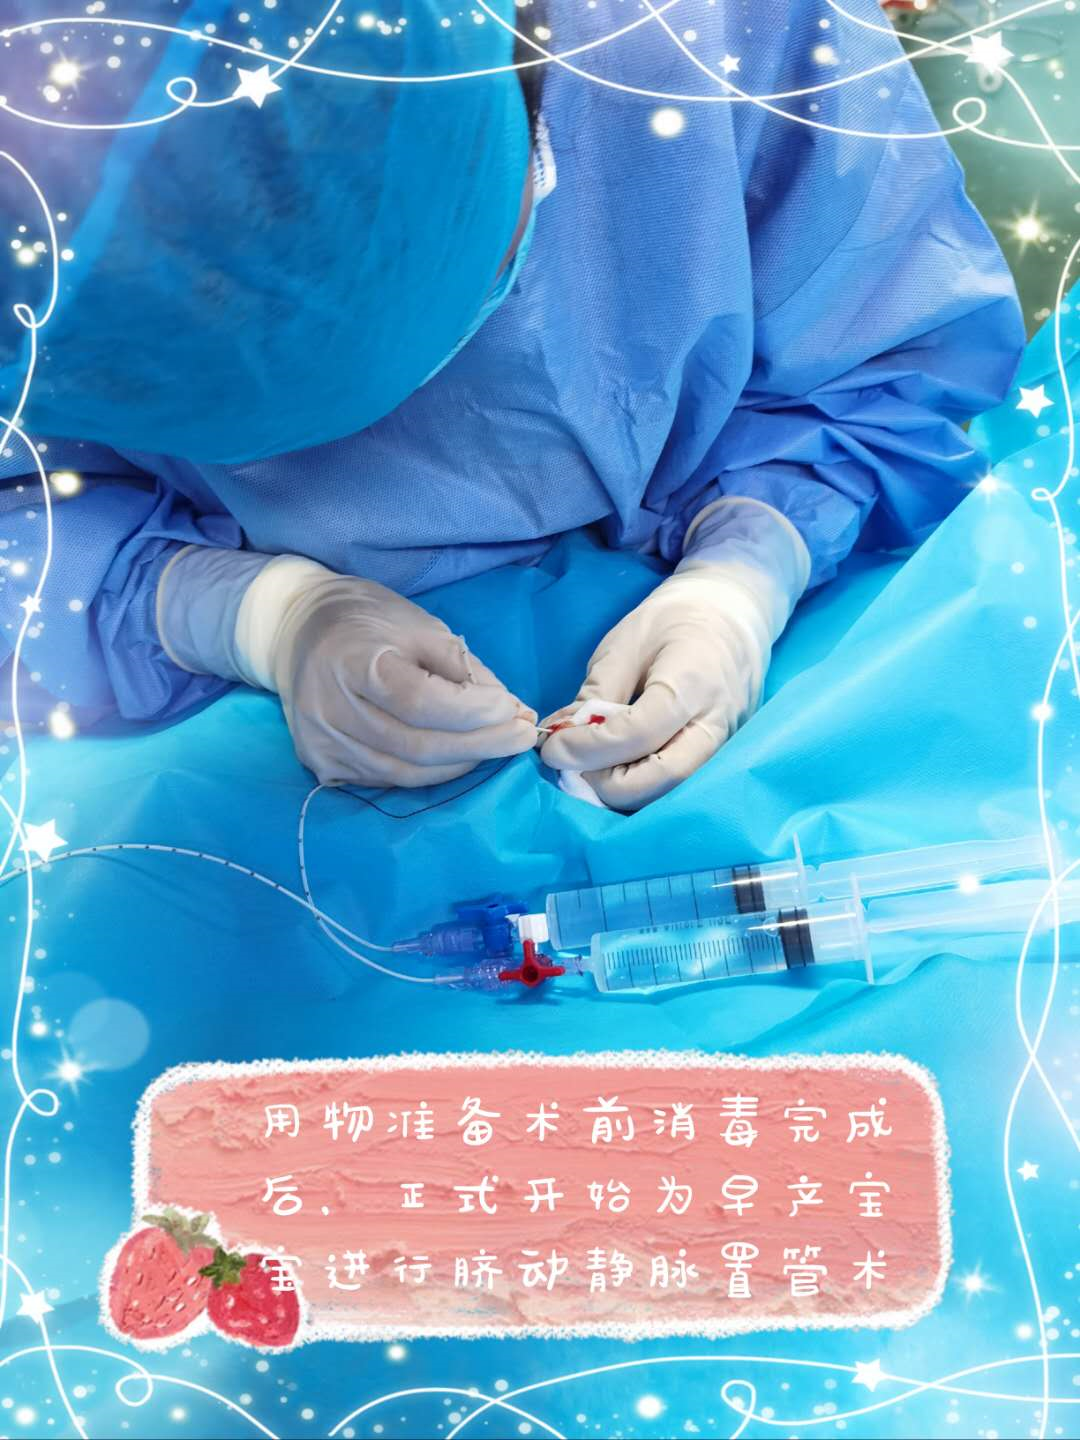 我院完成漯河市首例新生儿脐静脉置管术-信息动态-漯河市中心医院